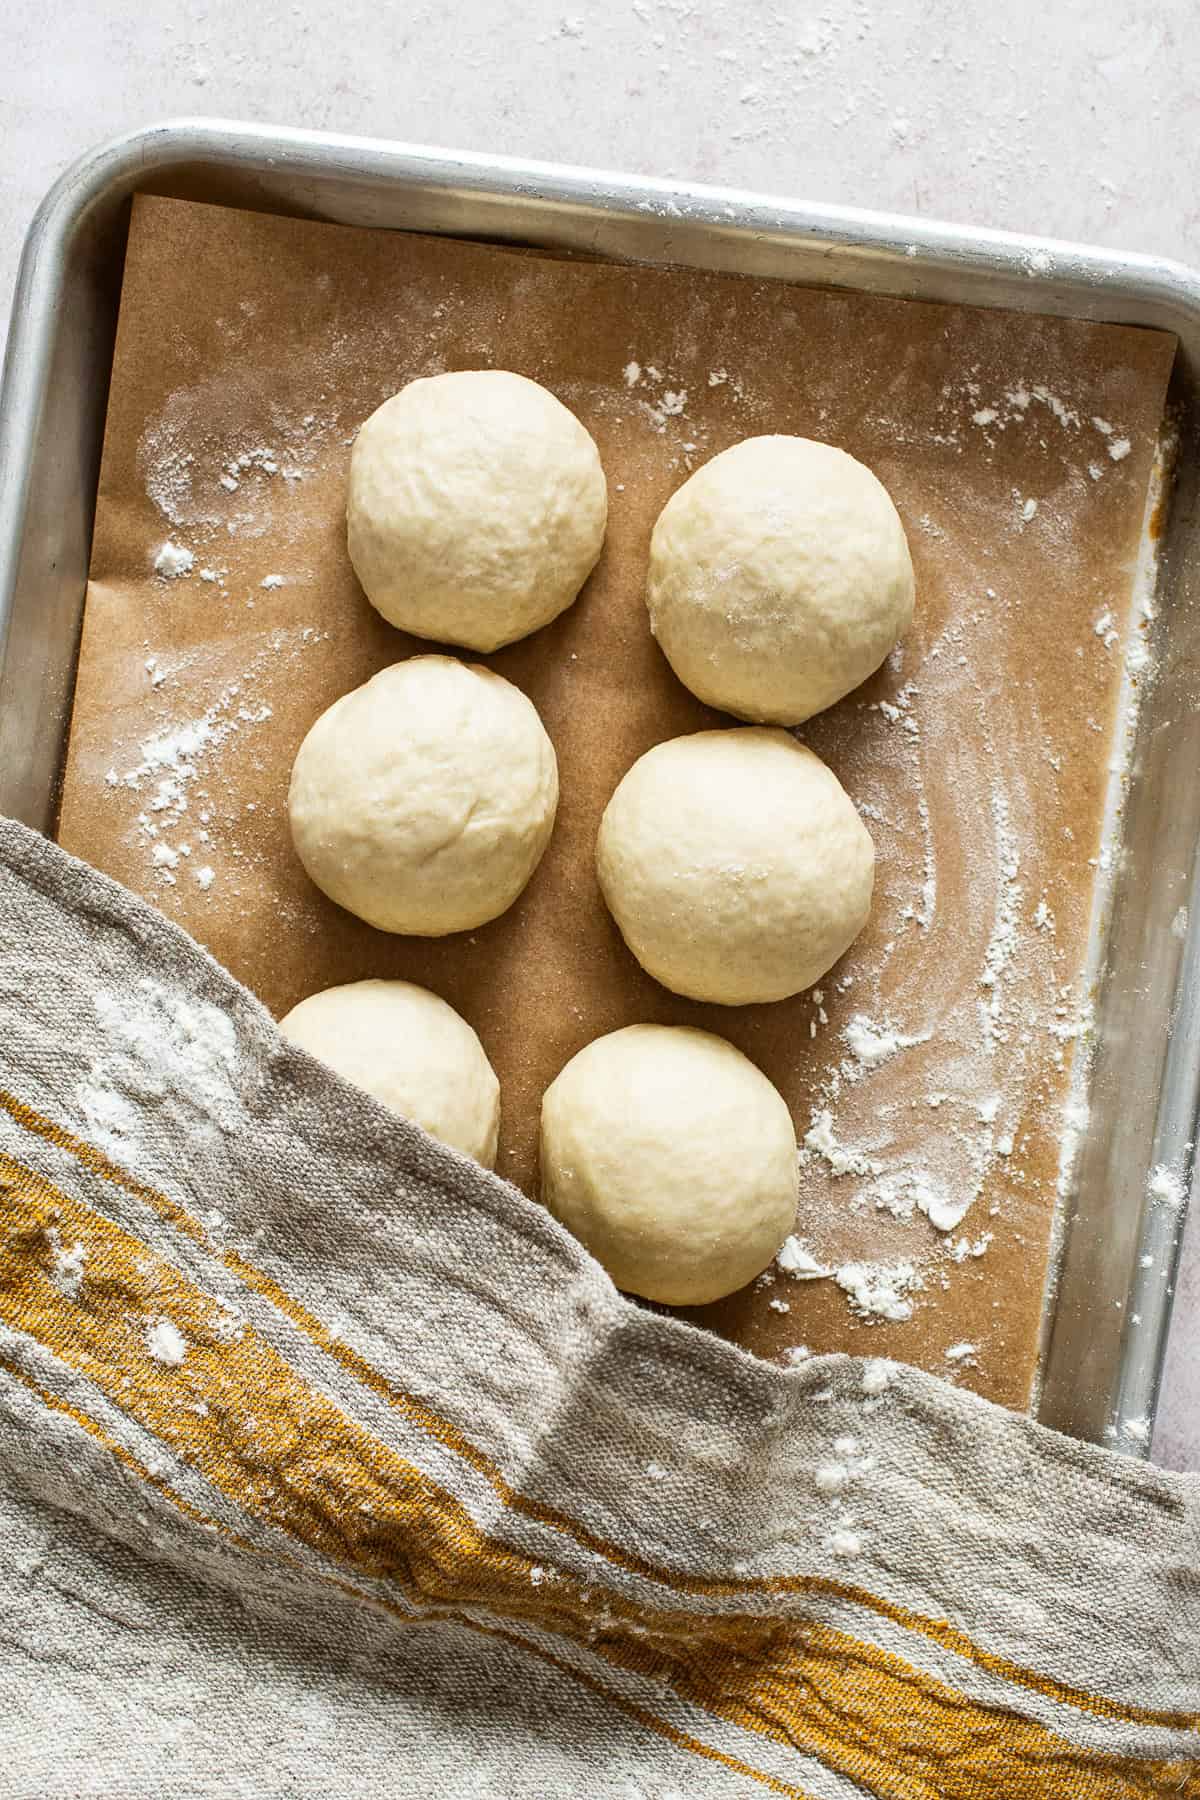 Flour tortilla dough formed into 8 equal balls